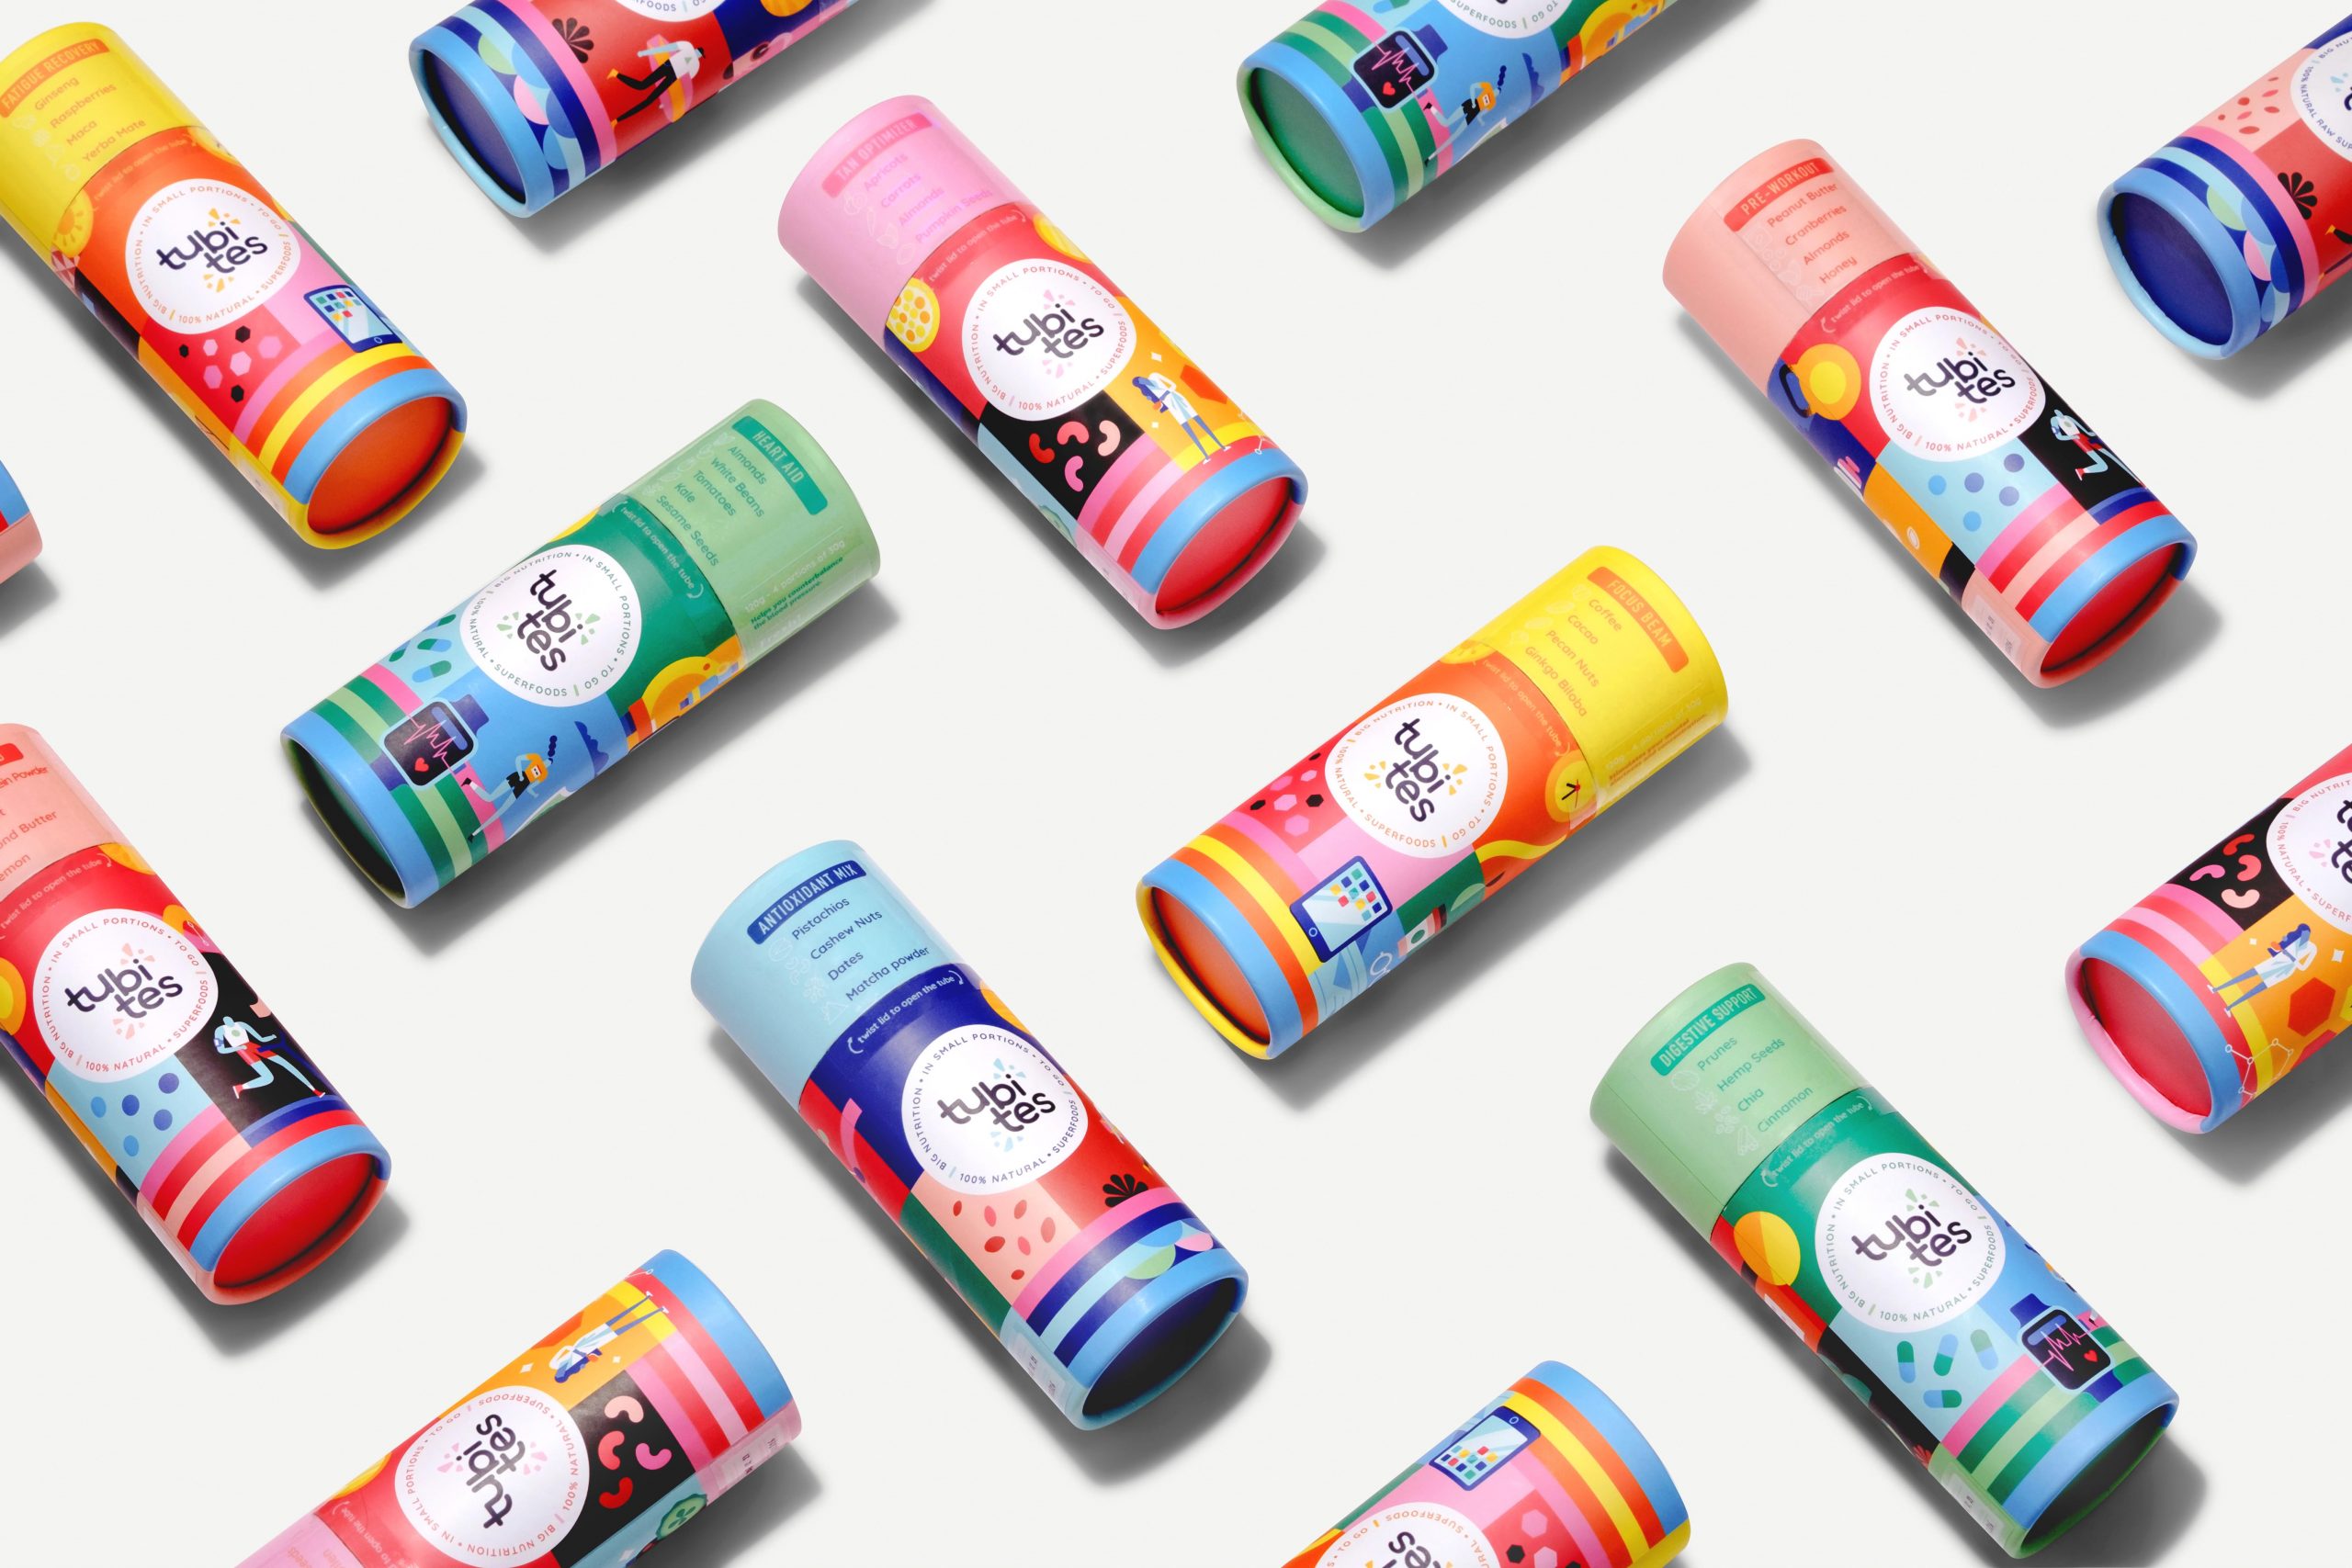 Tubites vem como marca de snacks saudáveis lançada por publicitários